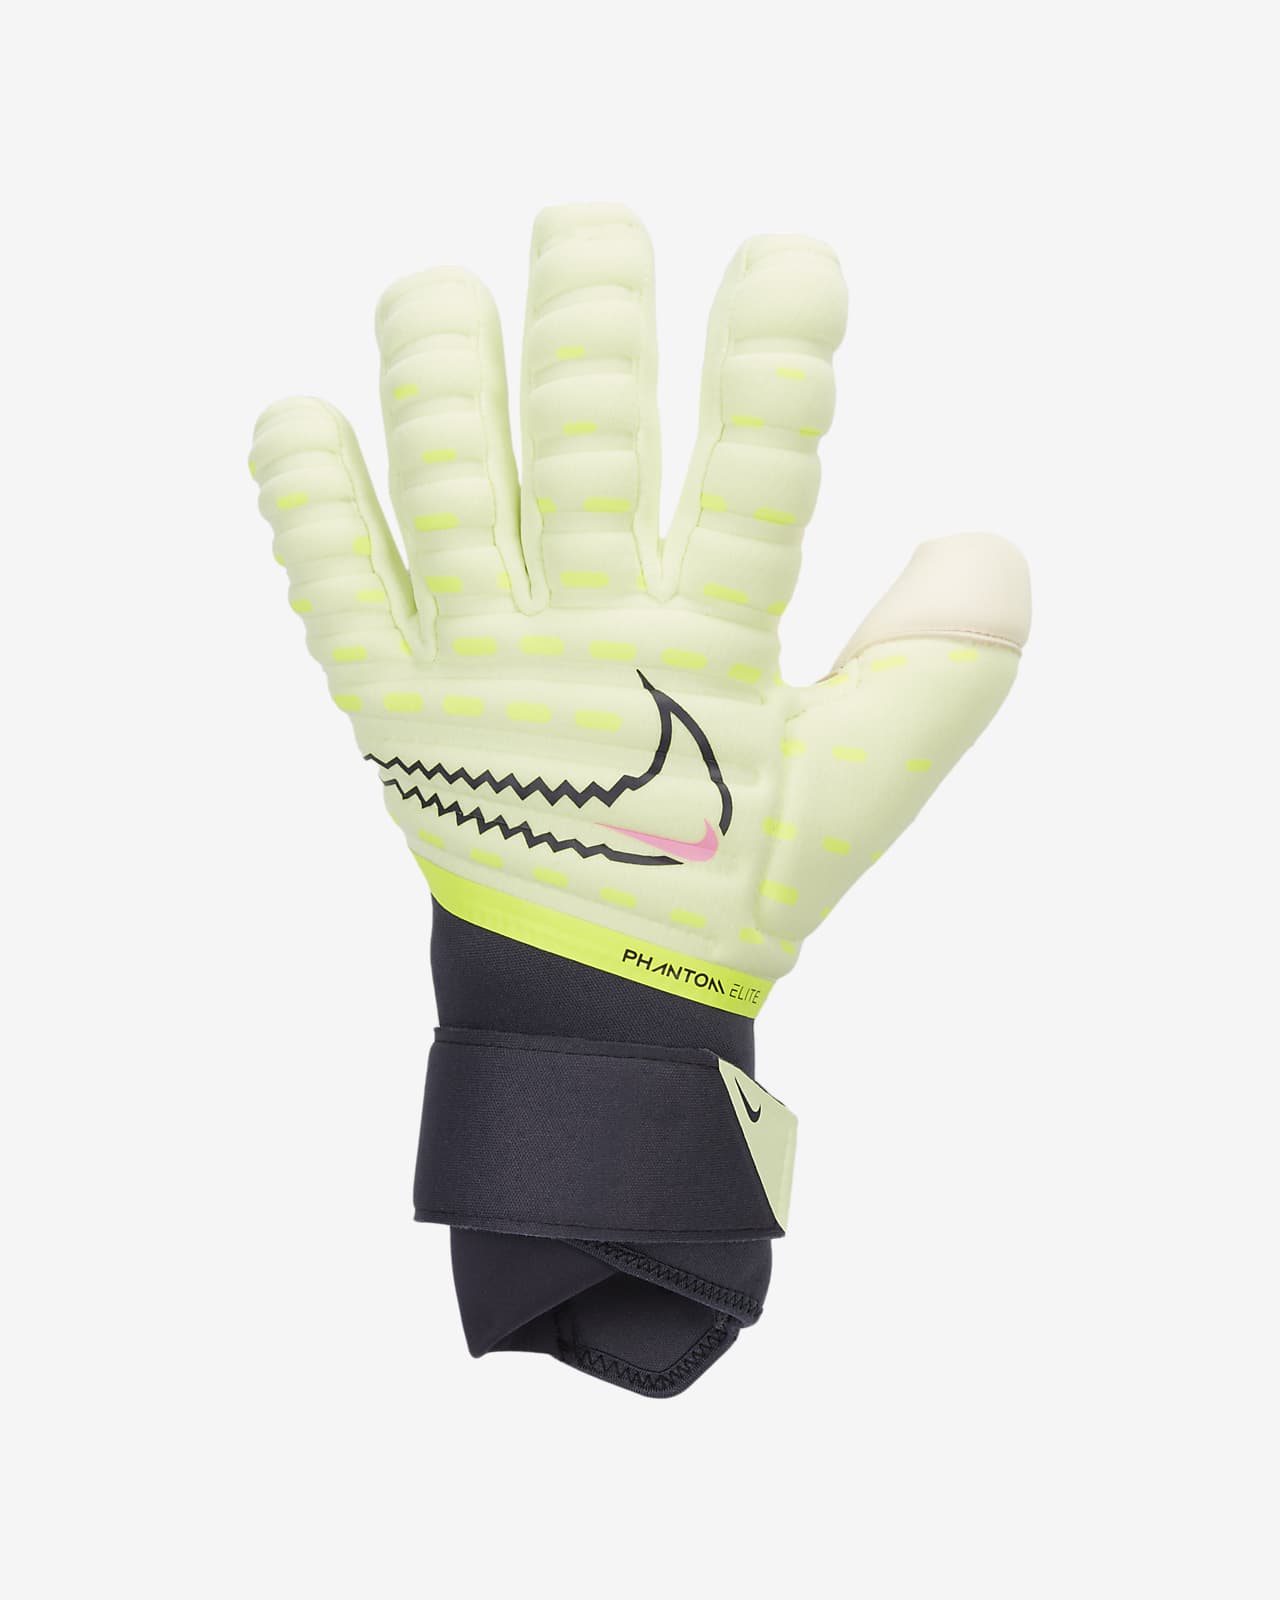 Phantom Elite Goalkeeper Gloves.